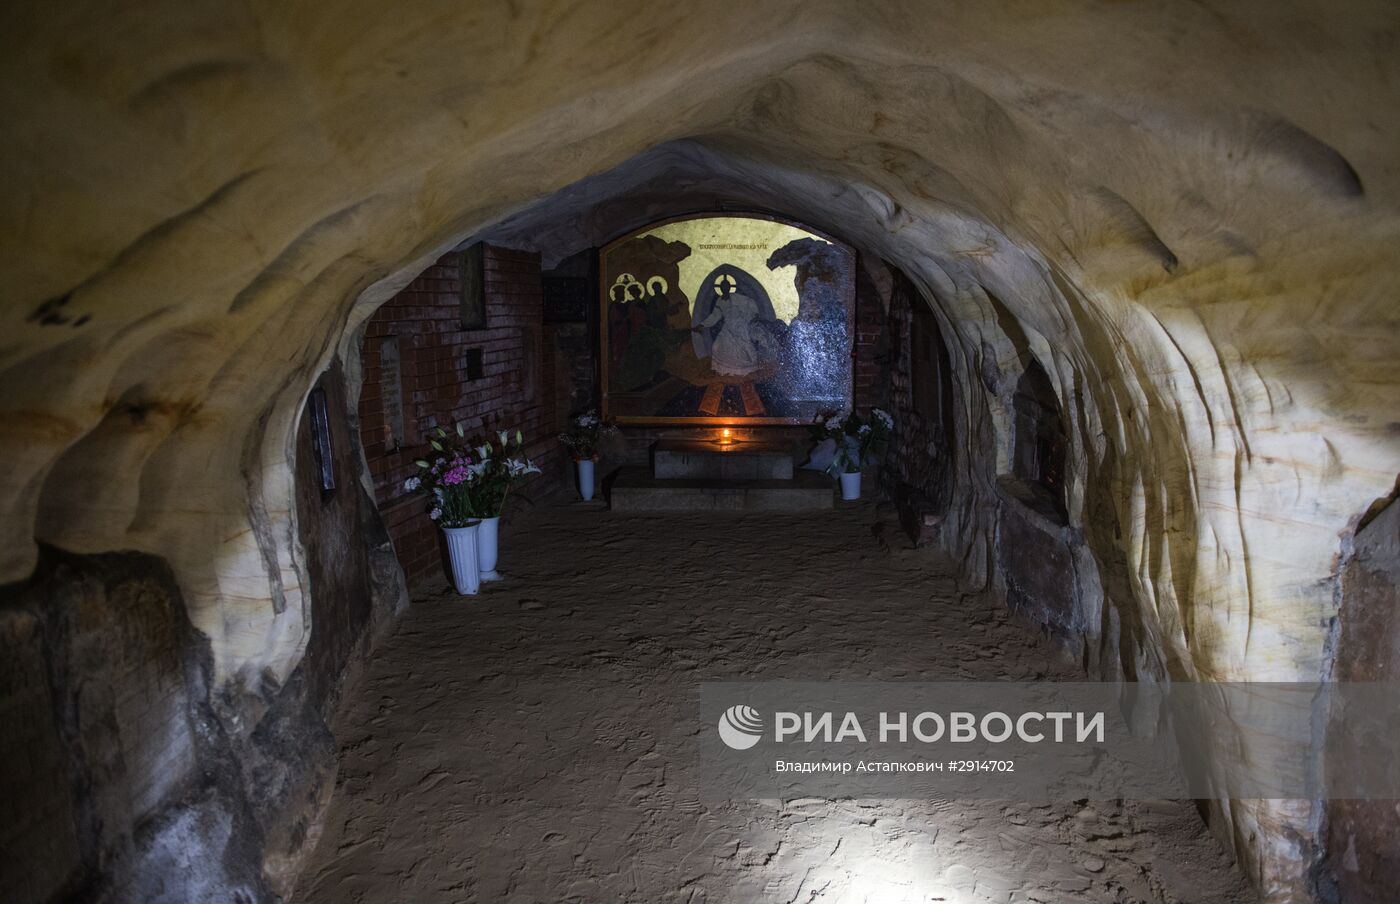 Свято-Успенский Псково-Печерский монастырь в Псковской области